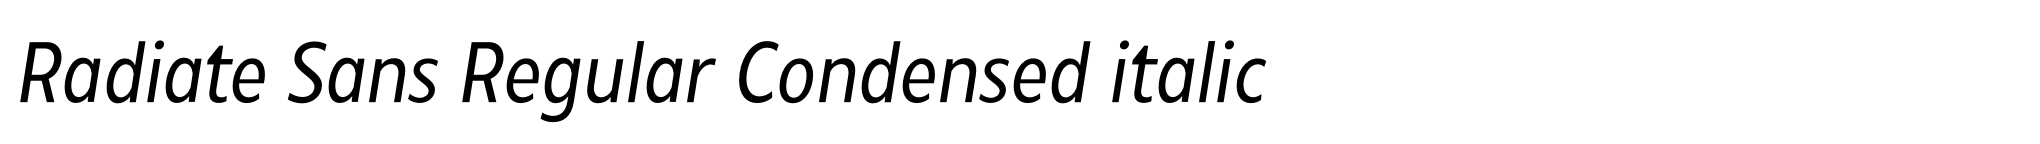 Radiate Sans Regular Condensed italic image